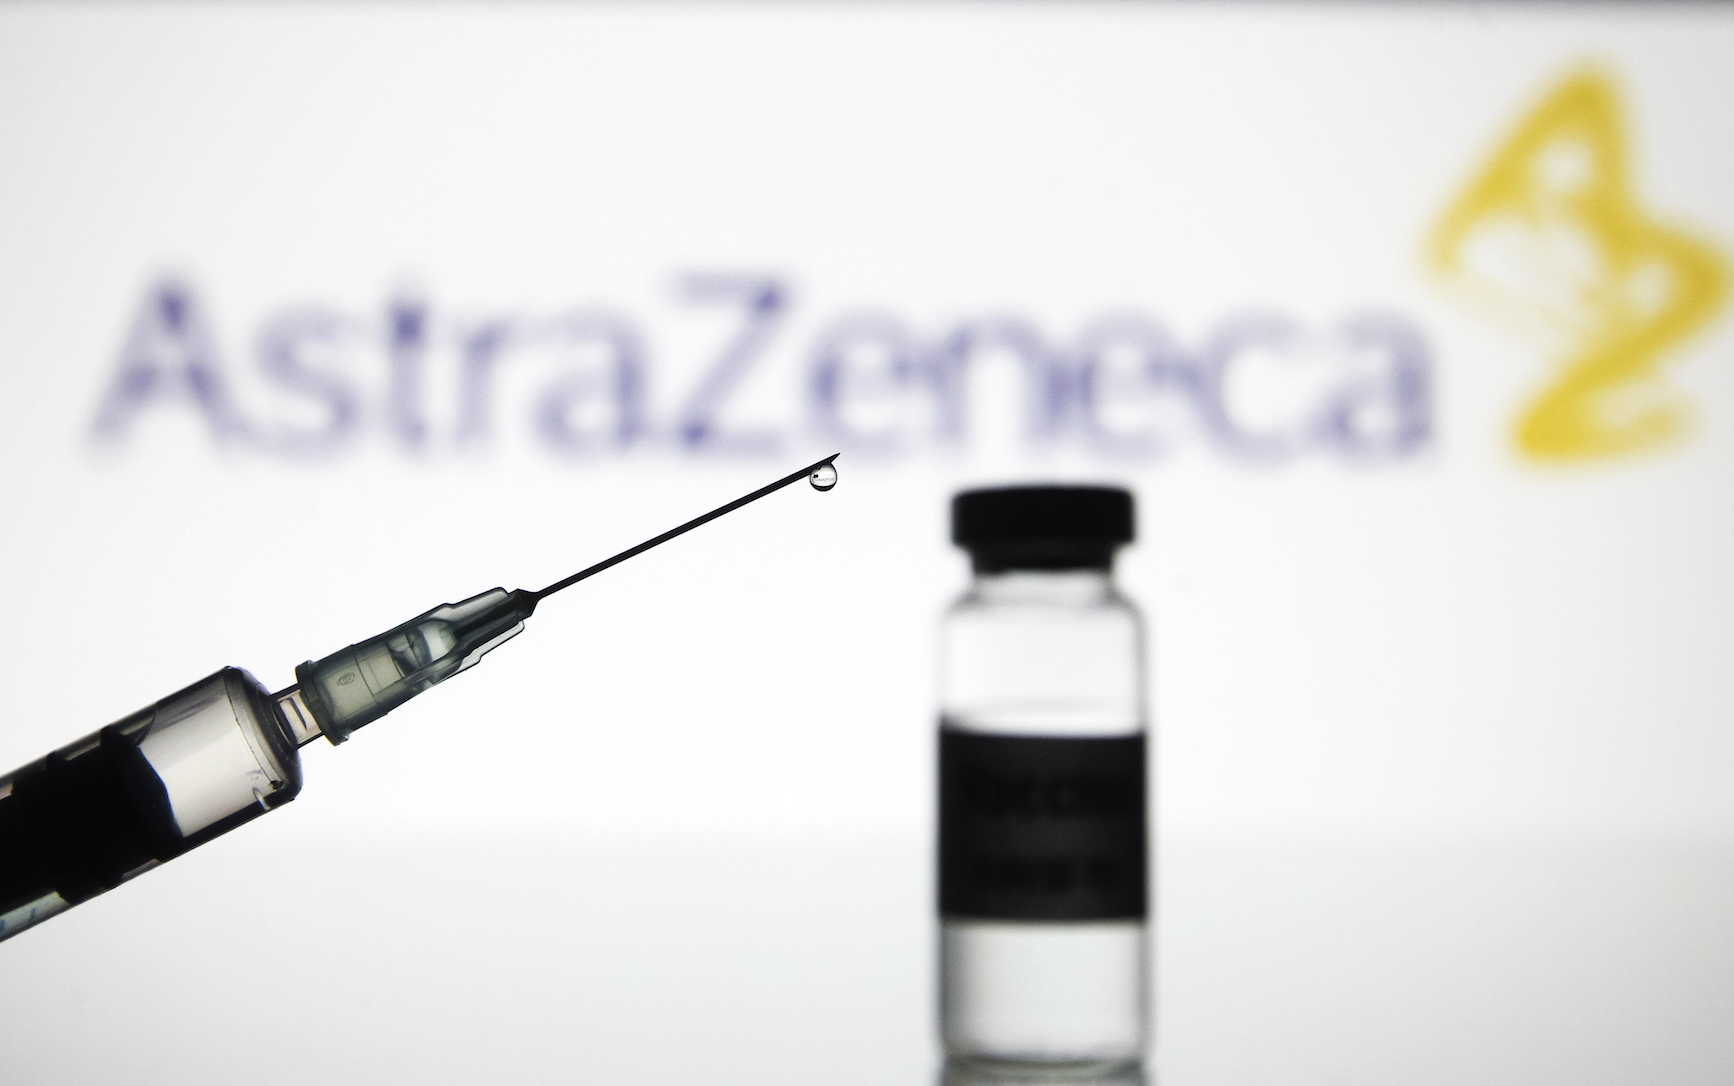 Вирусолог назвал очень низким показатель эффективности оксфордской вакцины, которым похвасталась AstraZeneca